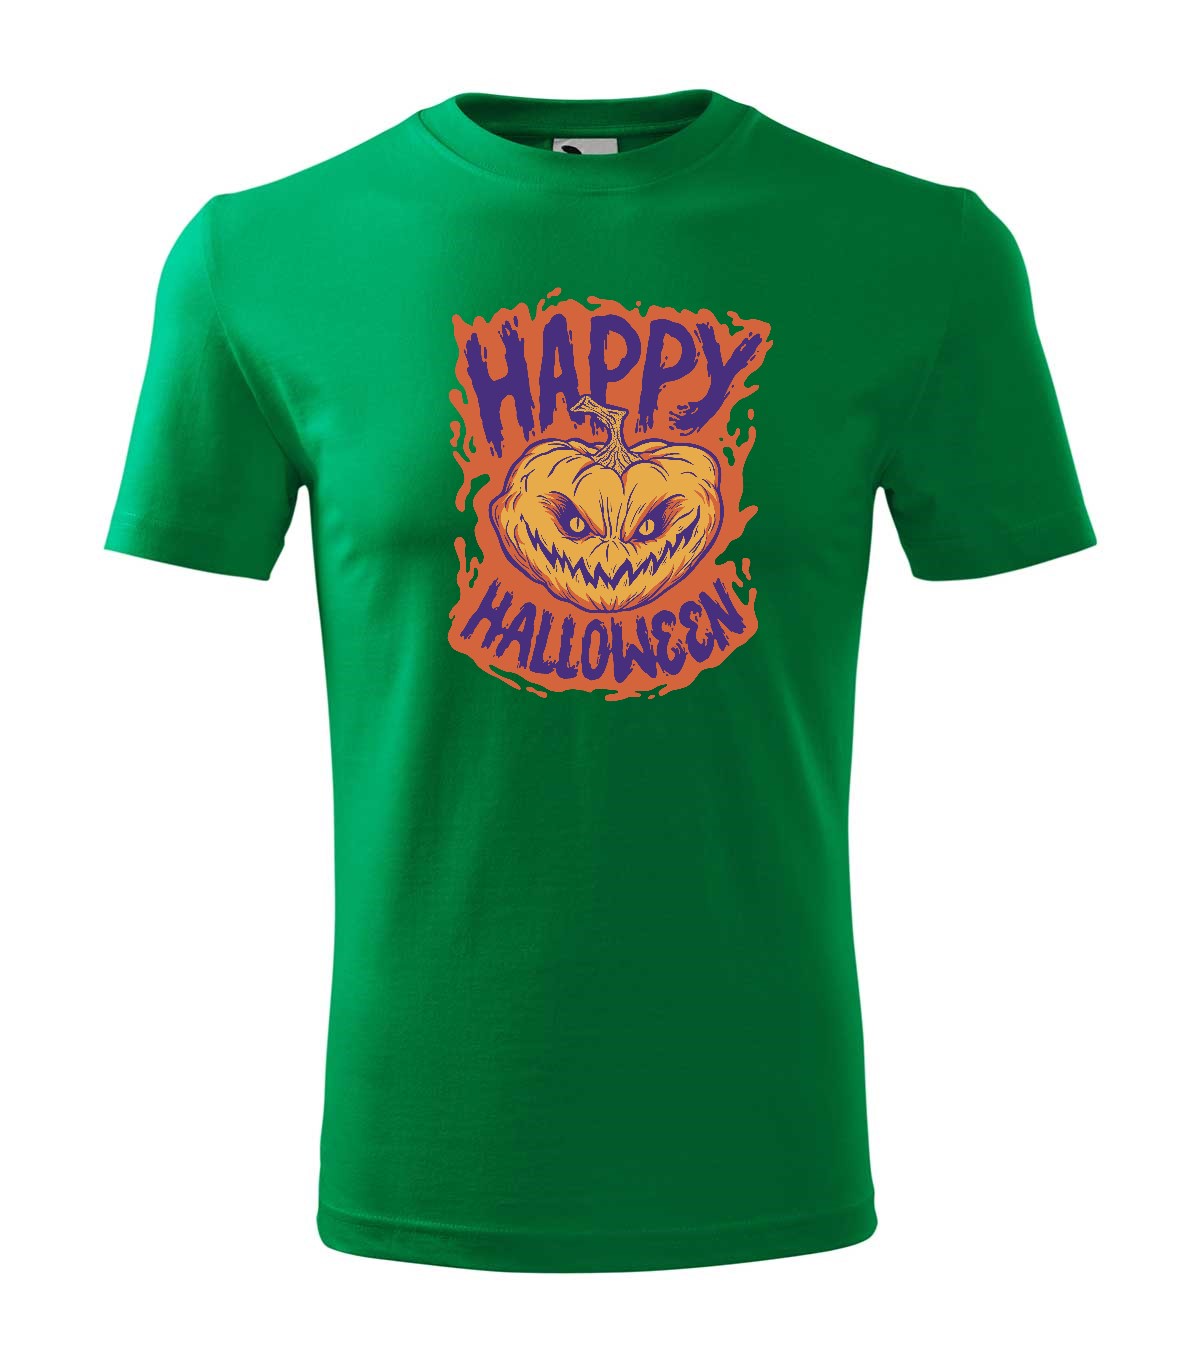 Happy Halloween 2 gyerek technikai póló